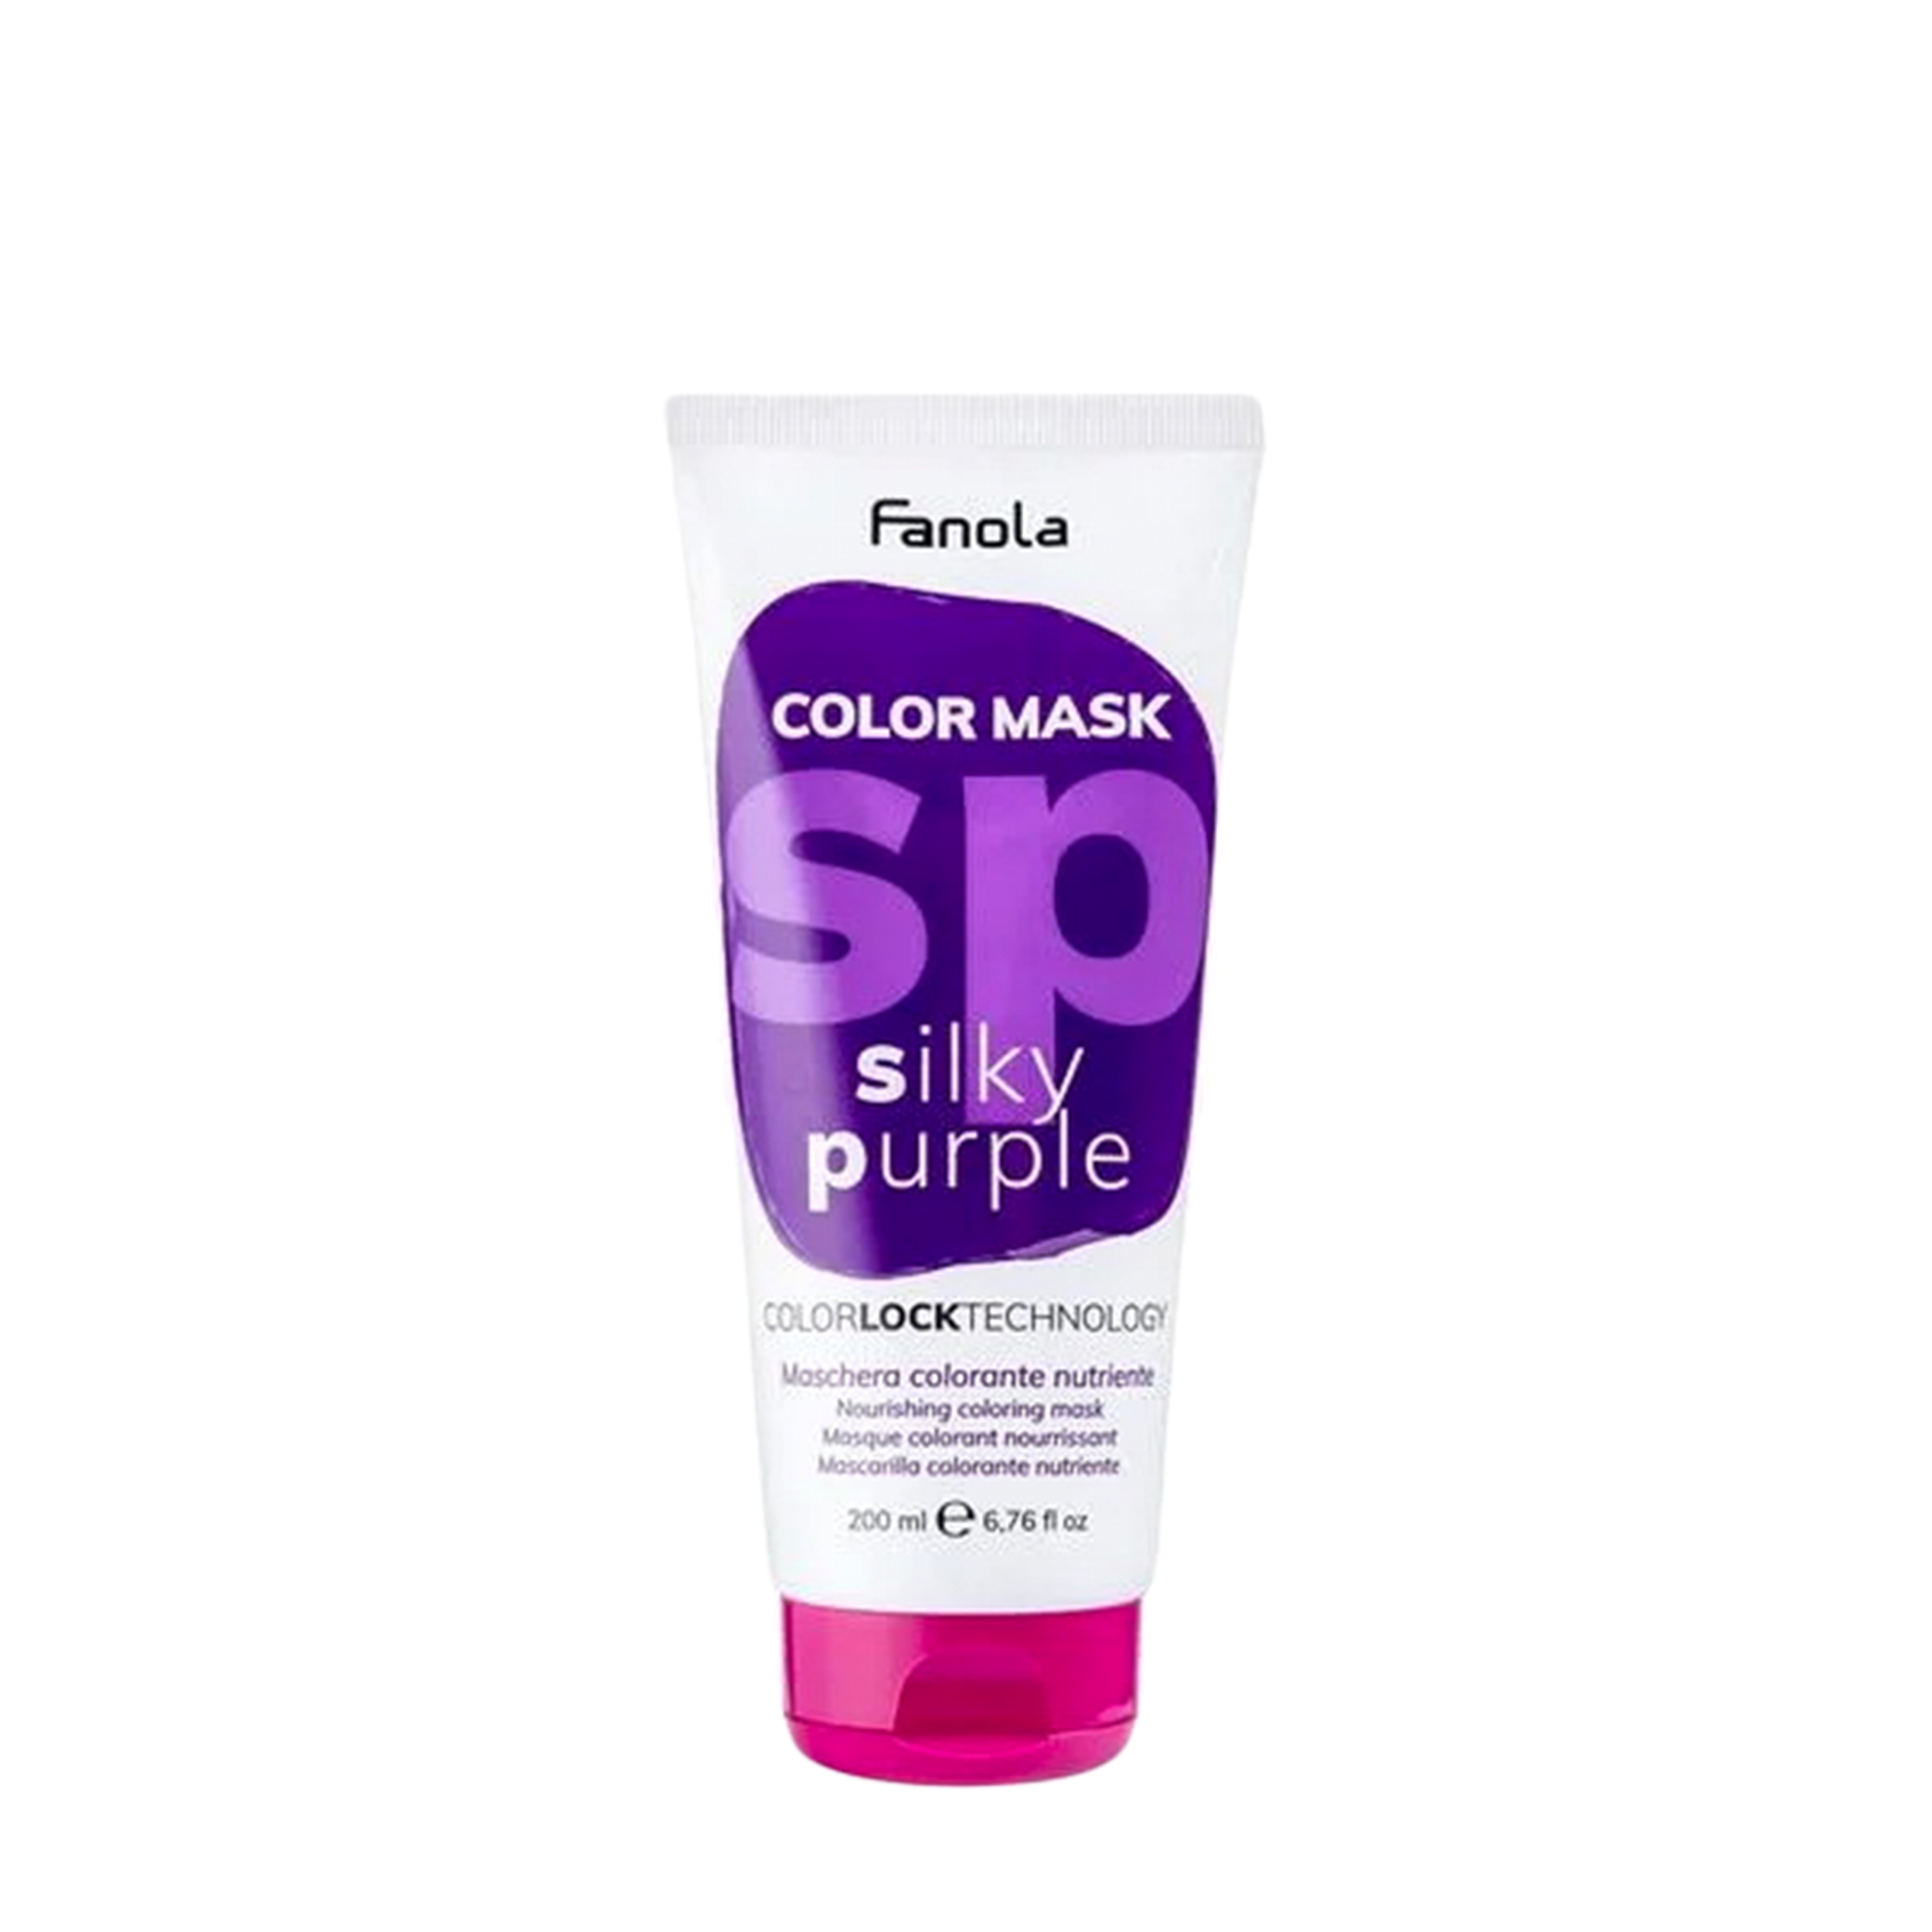 Fanola Fanola Оттеночная маска для волос Fanola Color Mask фиолетовая, 200 мл 200 мл 1076091 - фото 1